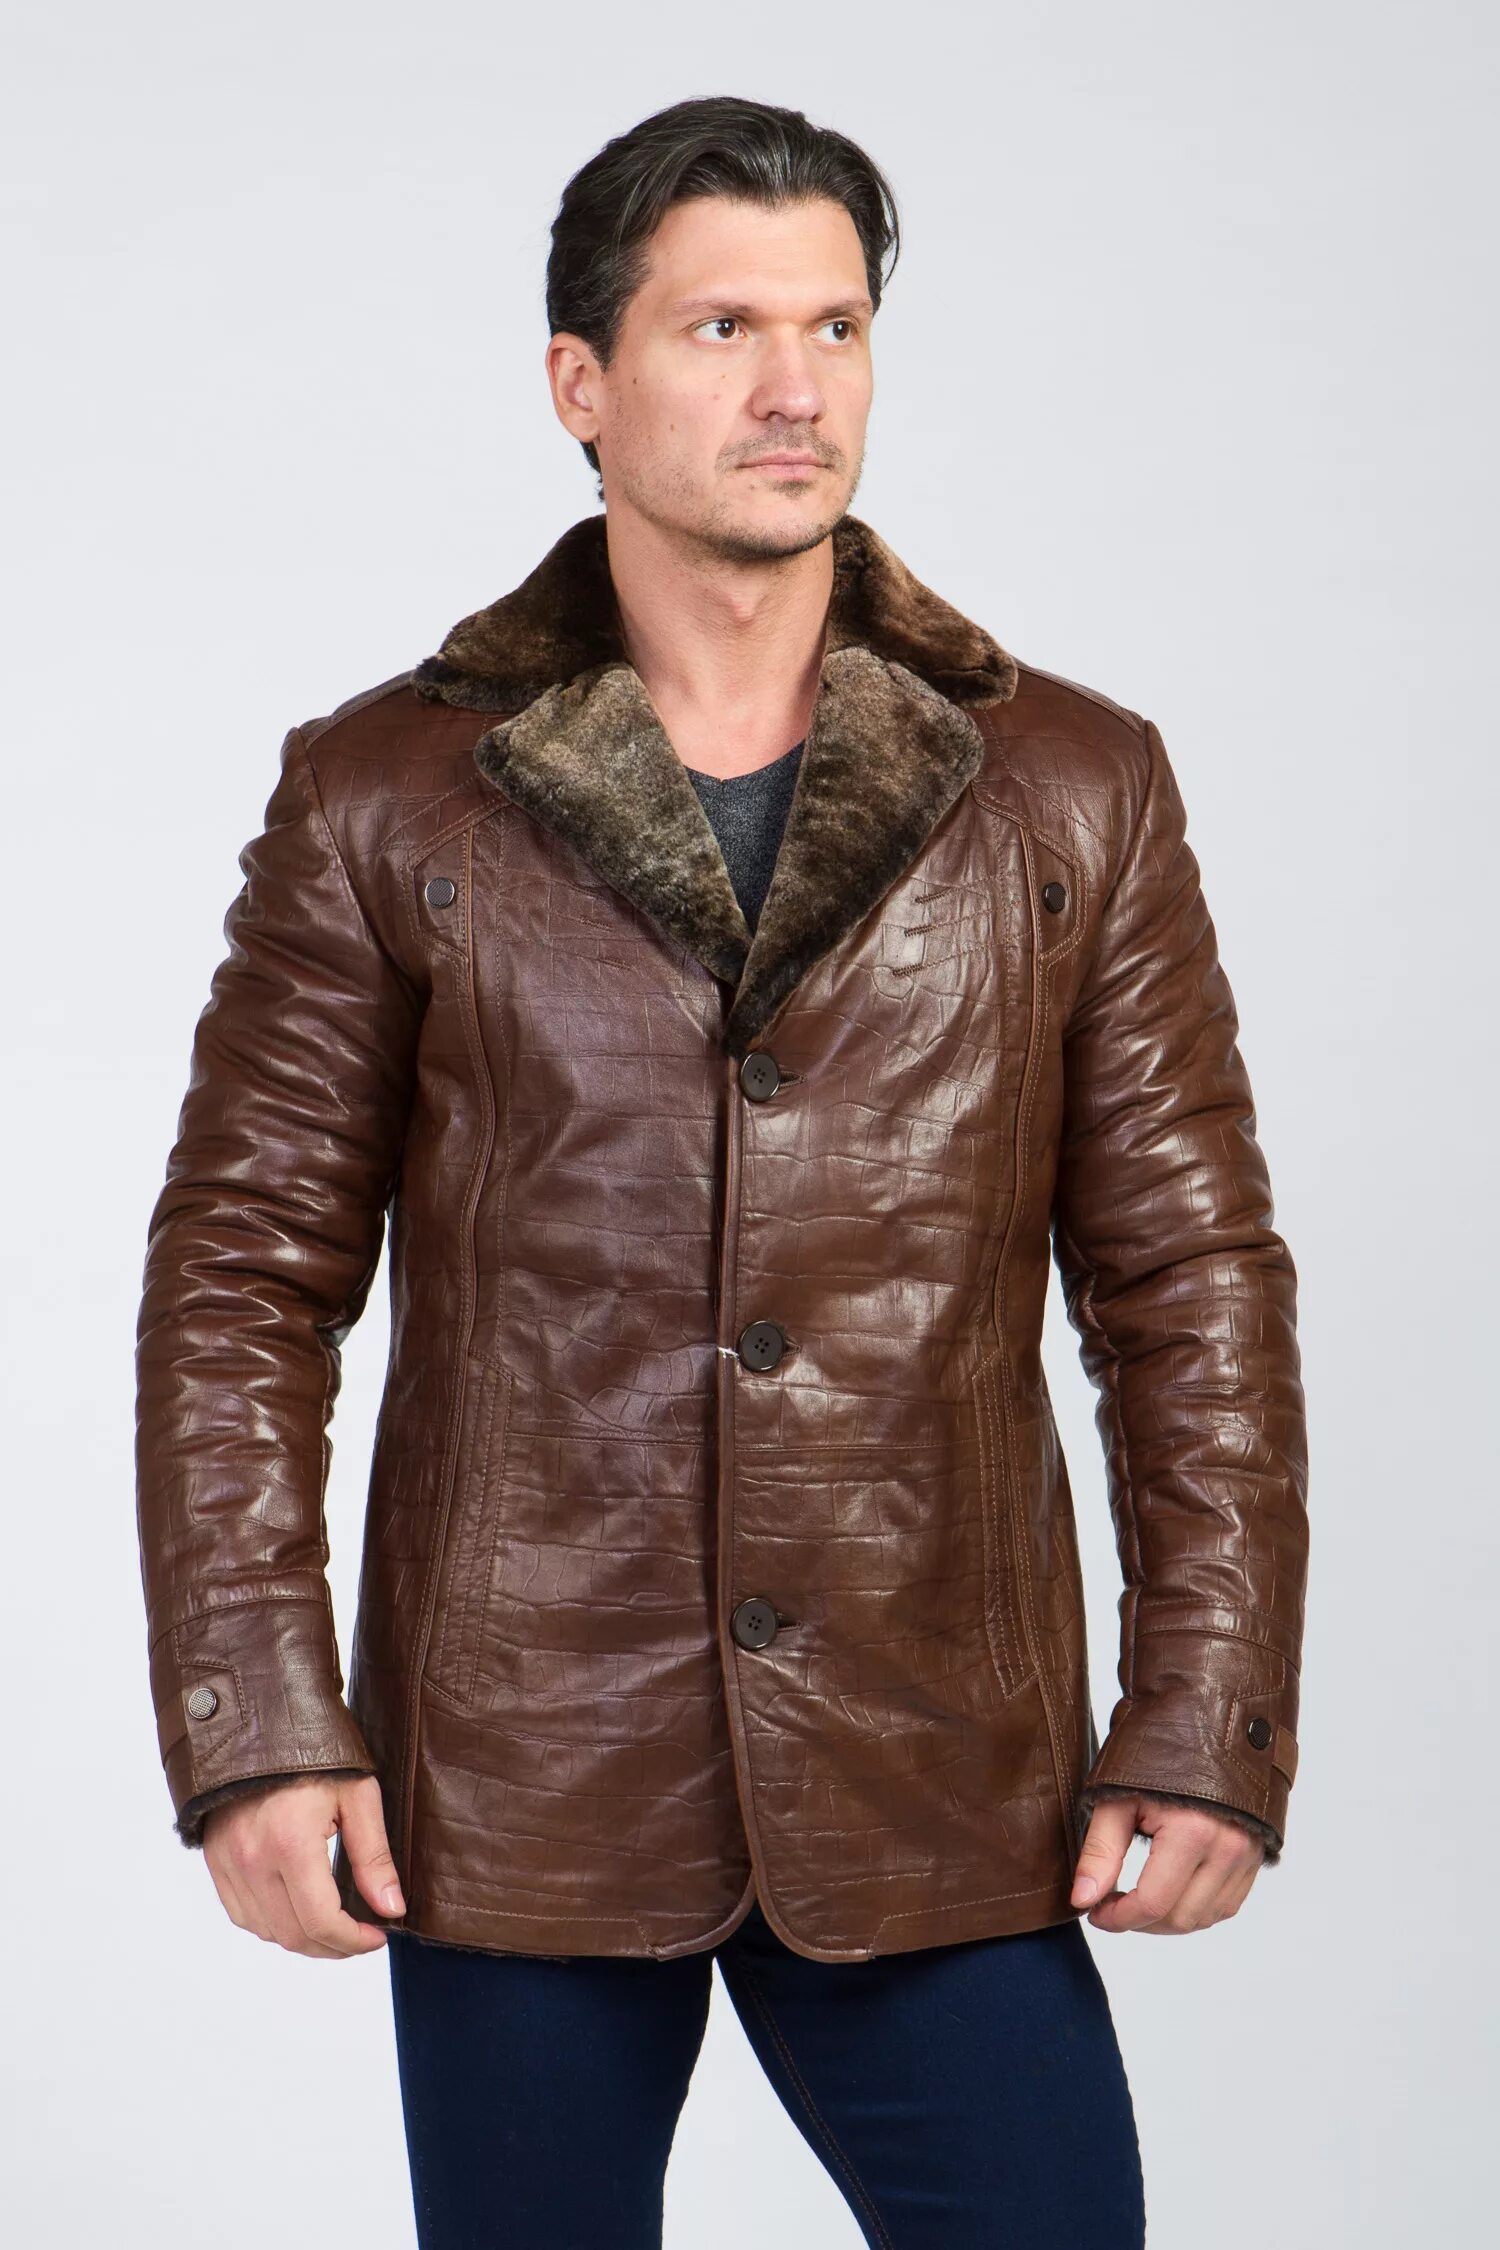 Мужские куртки зимние натуральной кожи. Коричневая кожаная куртка с мехом мужская. Кожаная куртка мужская зимняя коричневая.